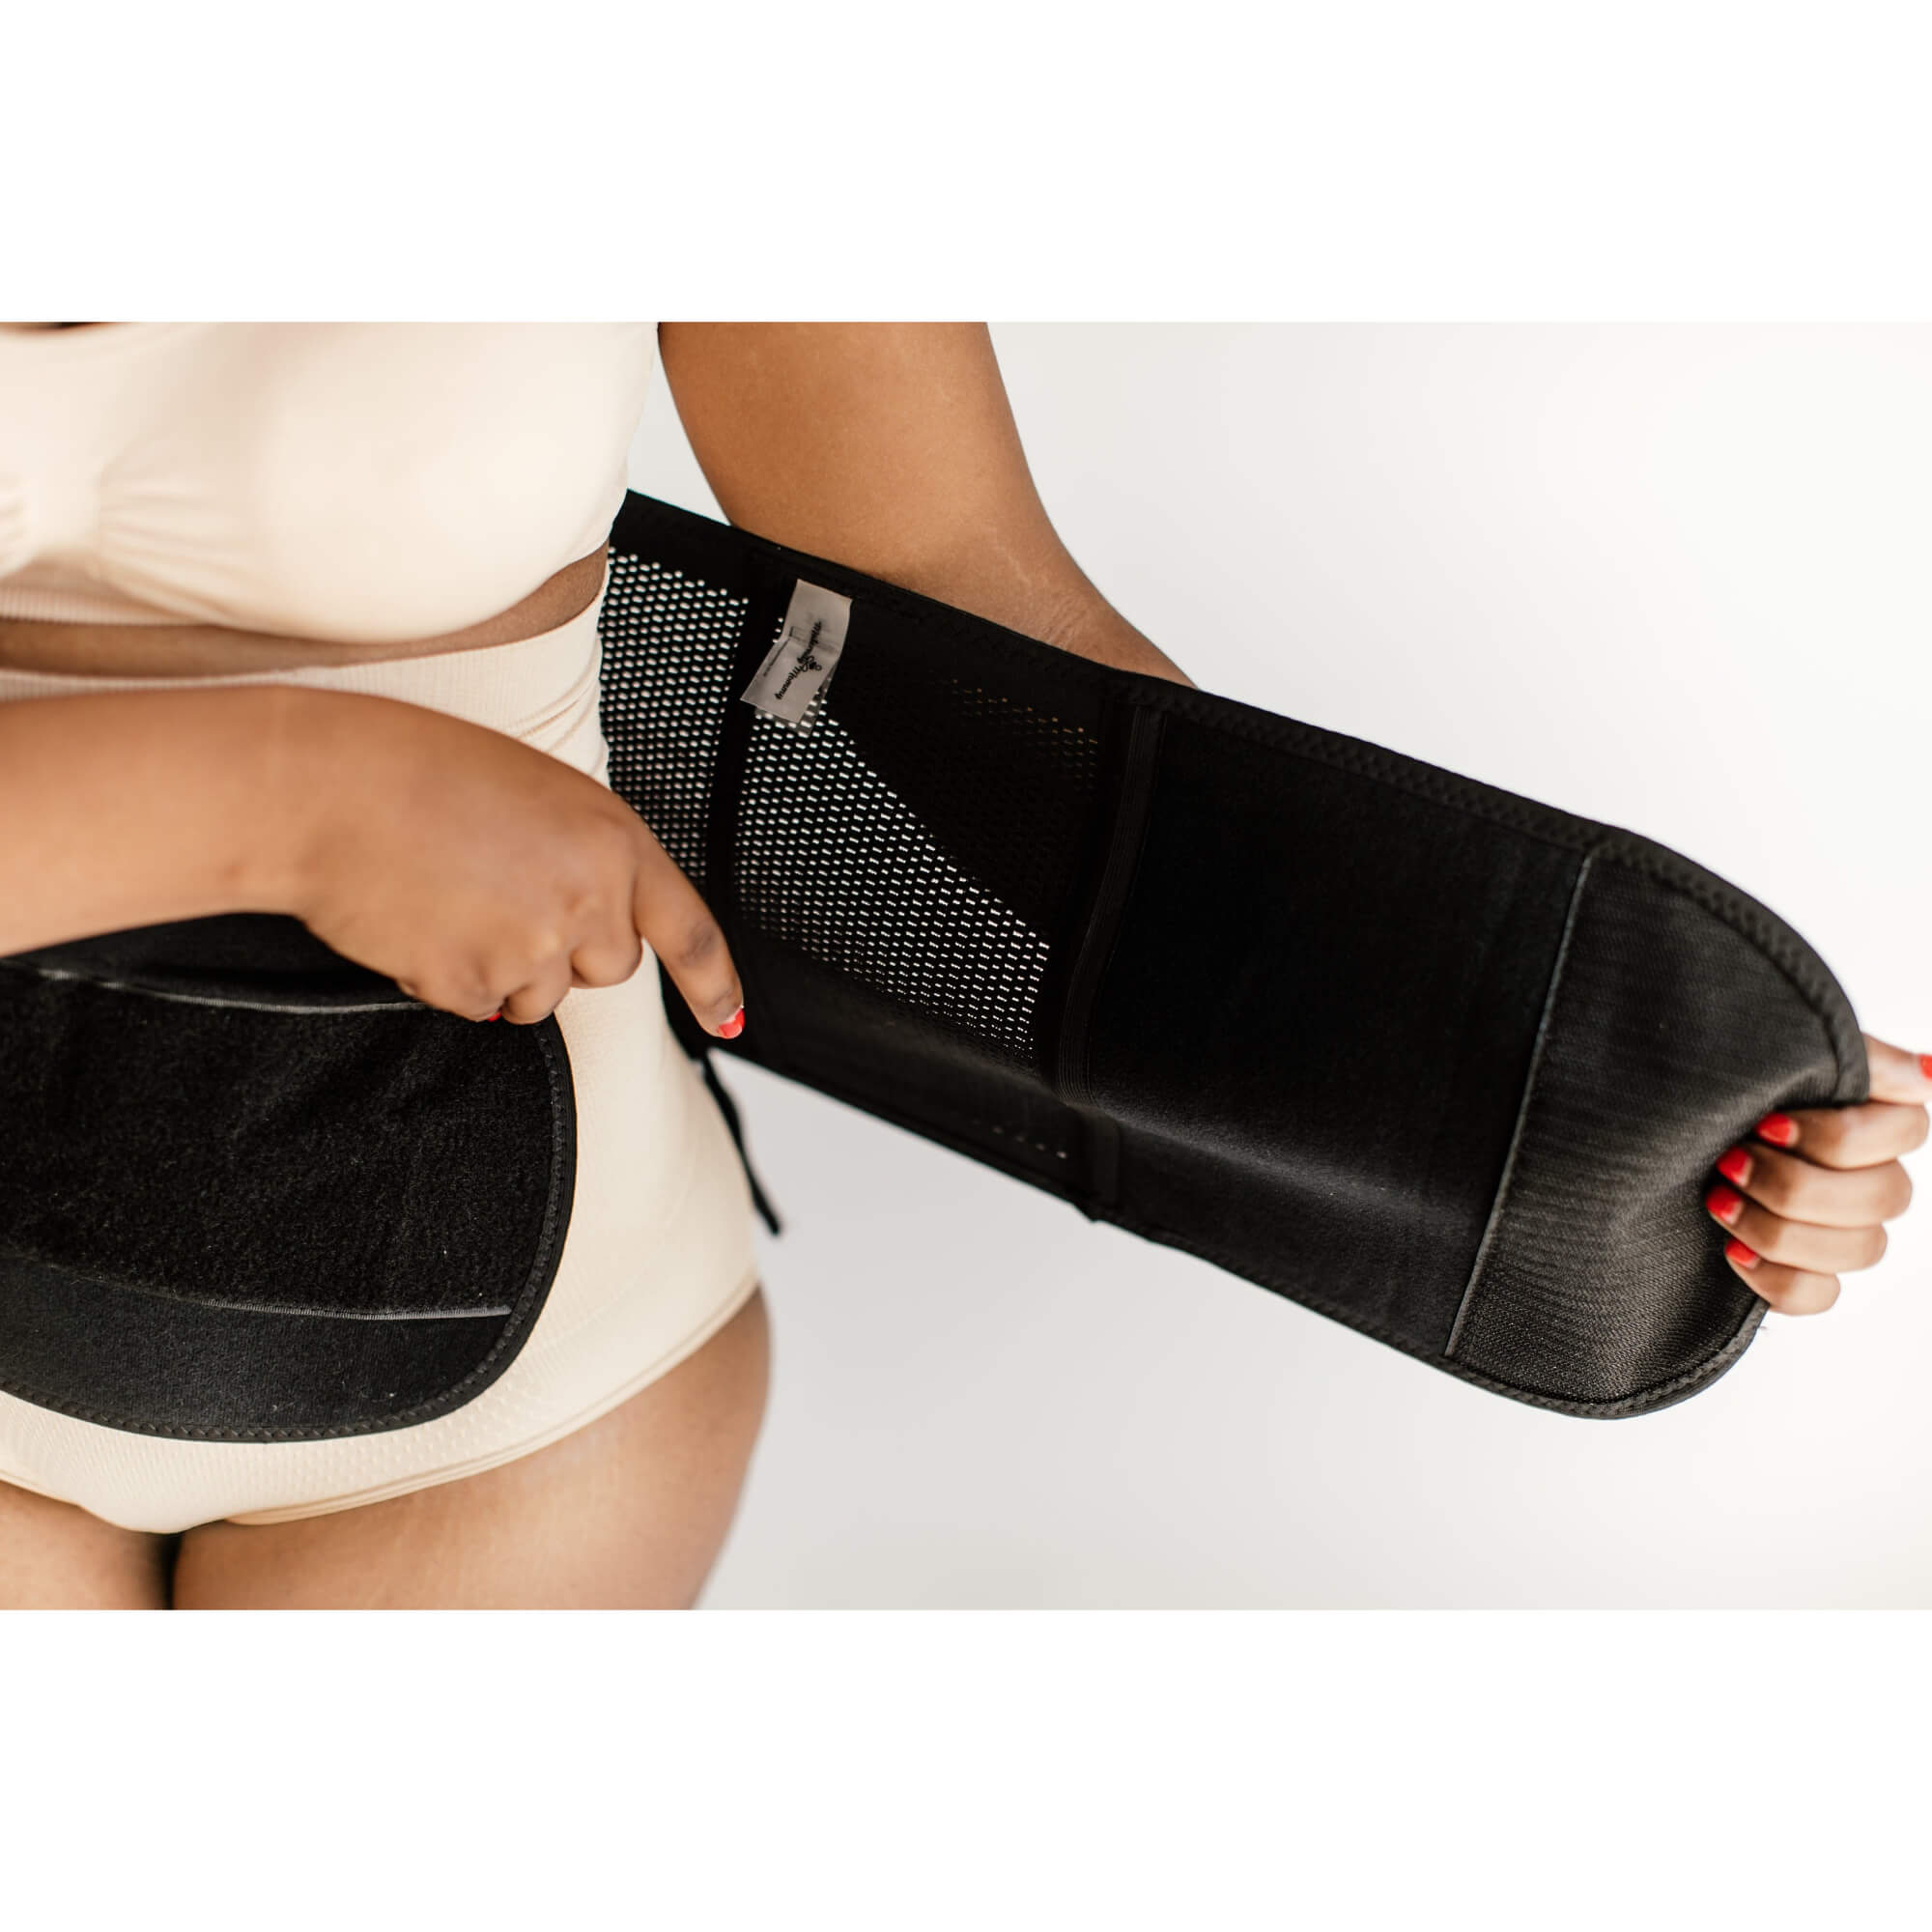 noola postpartum belly wrap black maternity belts support bands